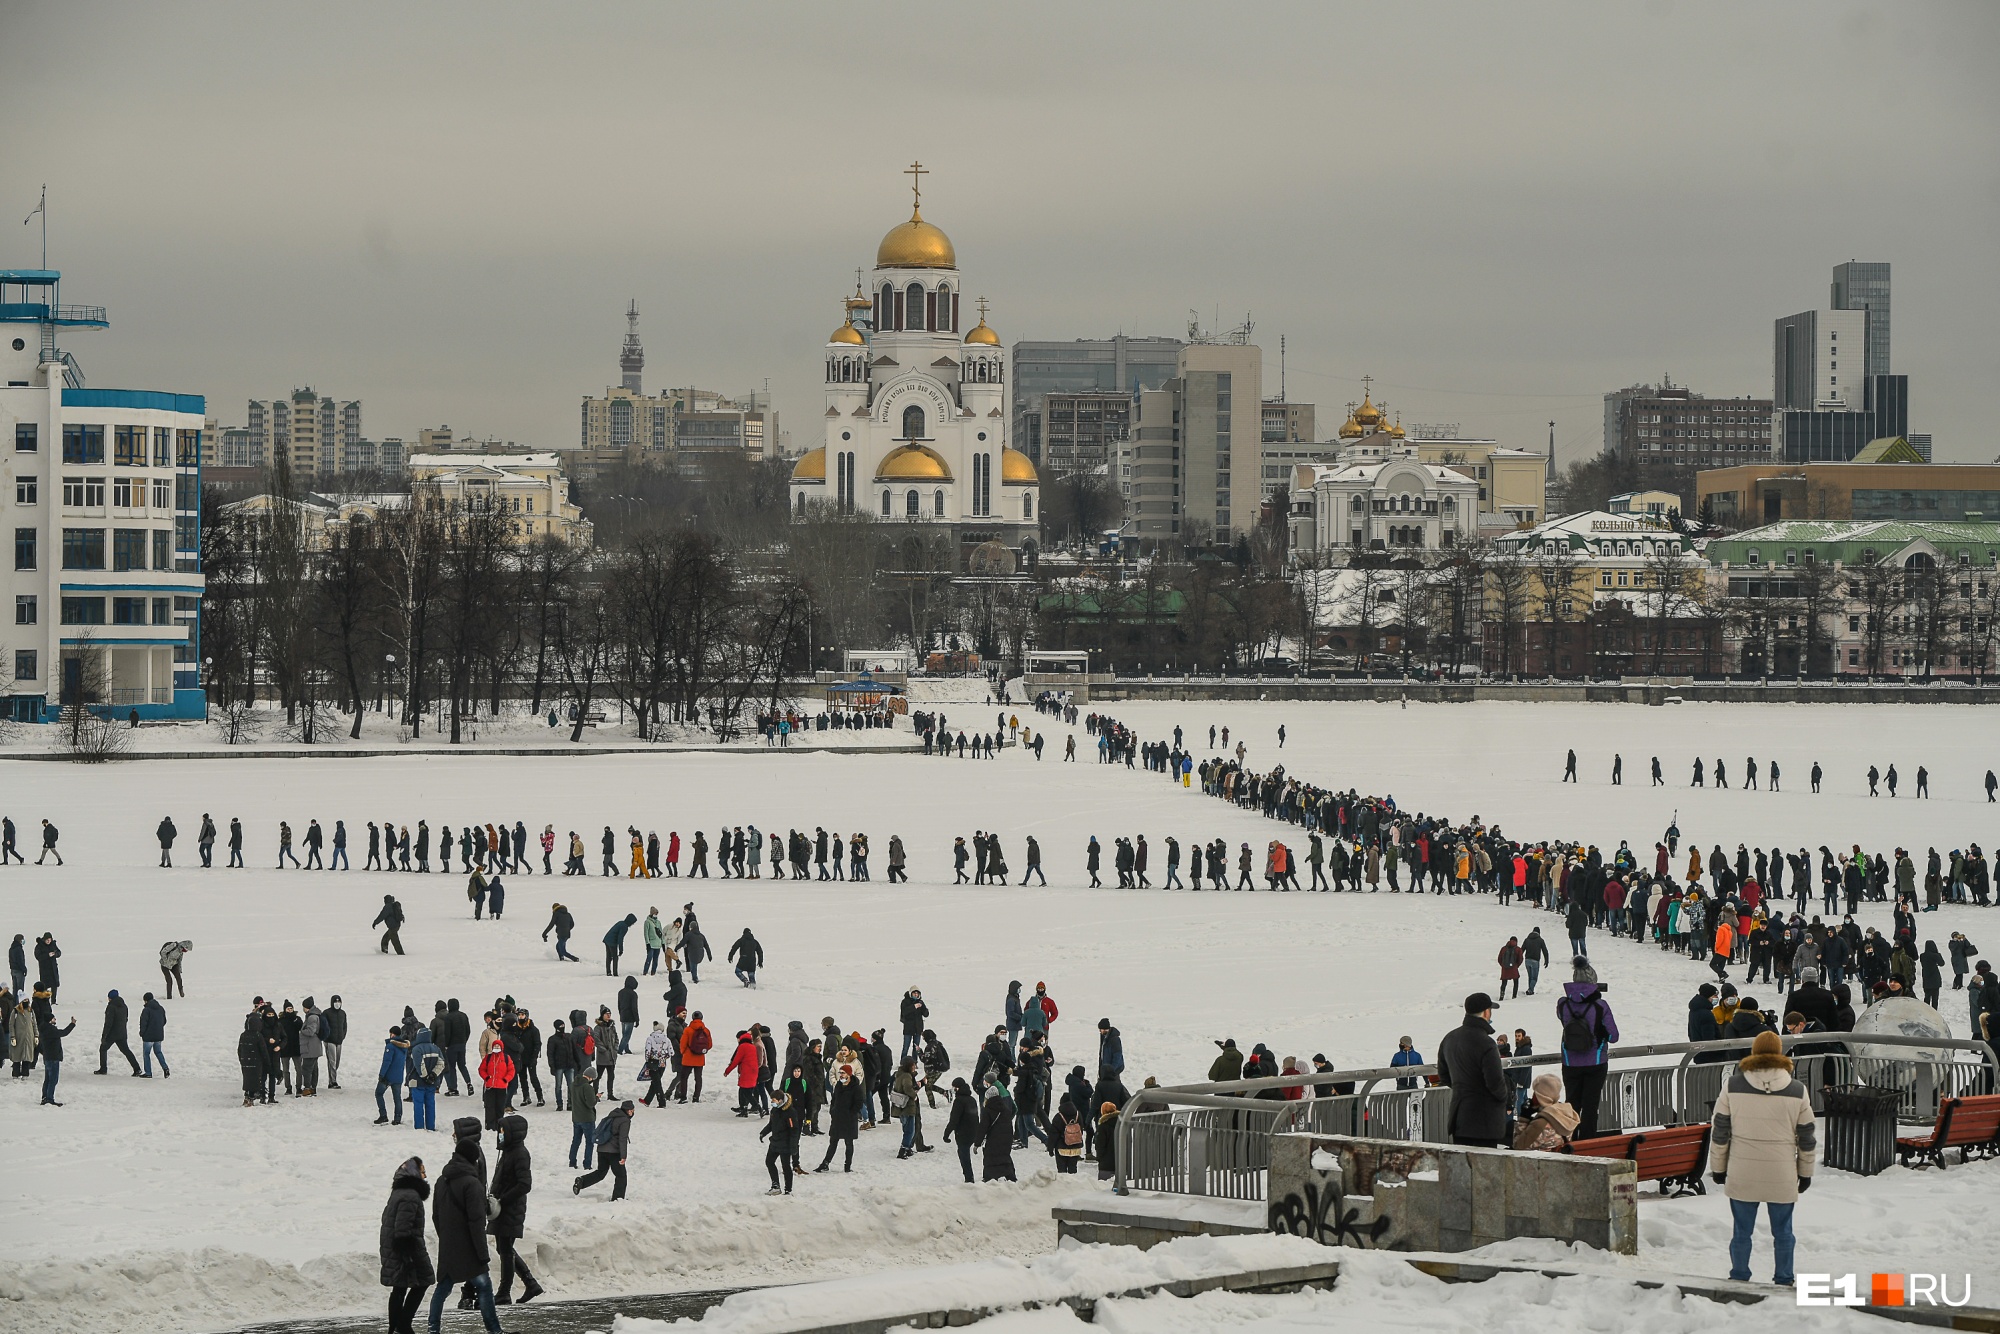 Прошли 9 километров: 30 главных кадров с акции в поддержку Навального в Екатеринбурге